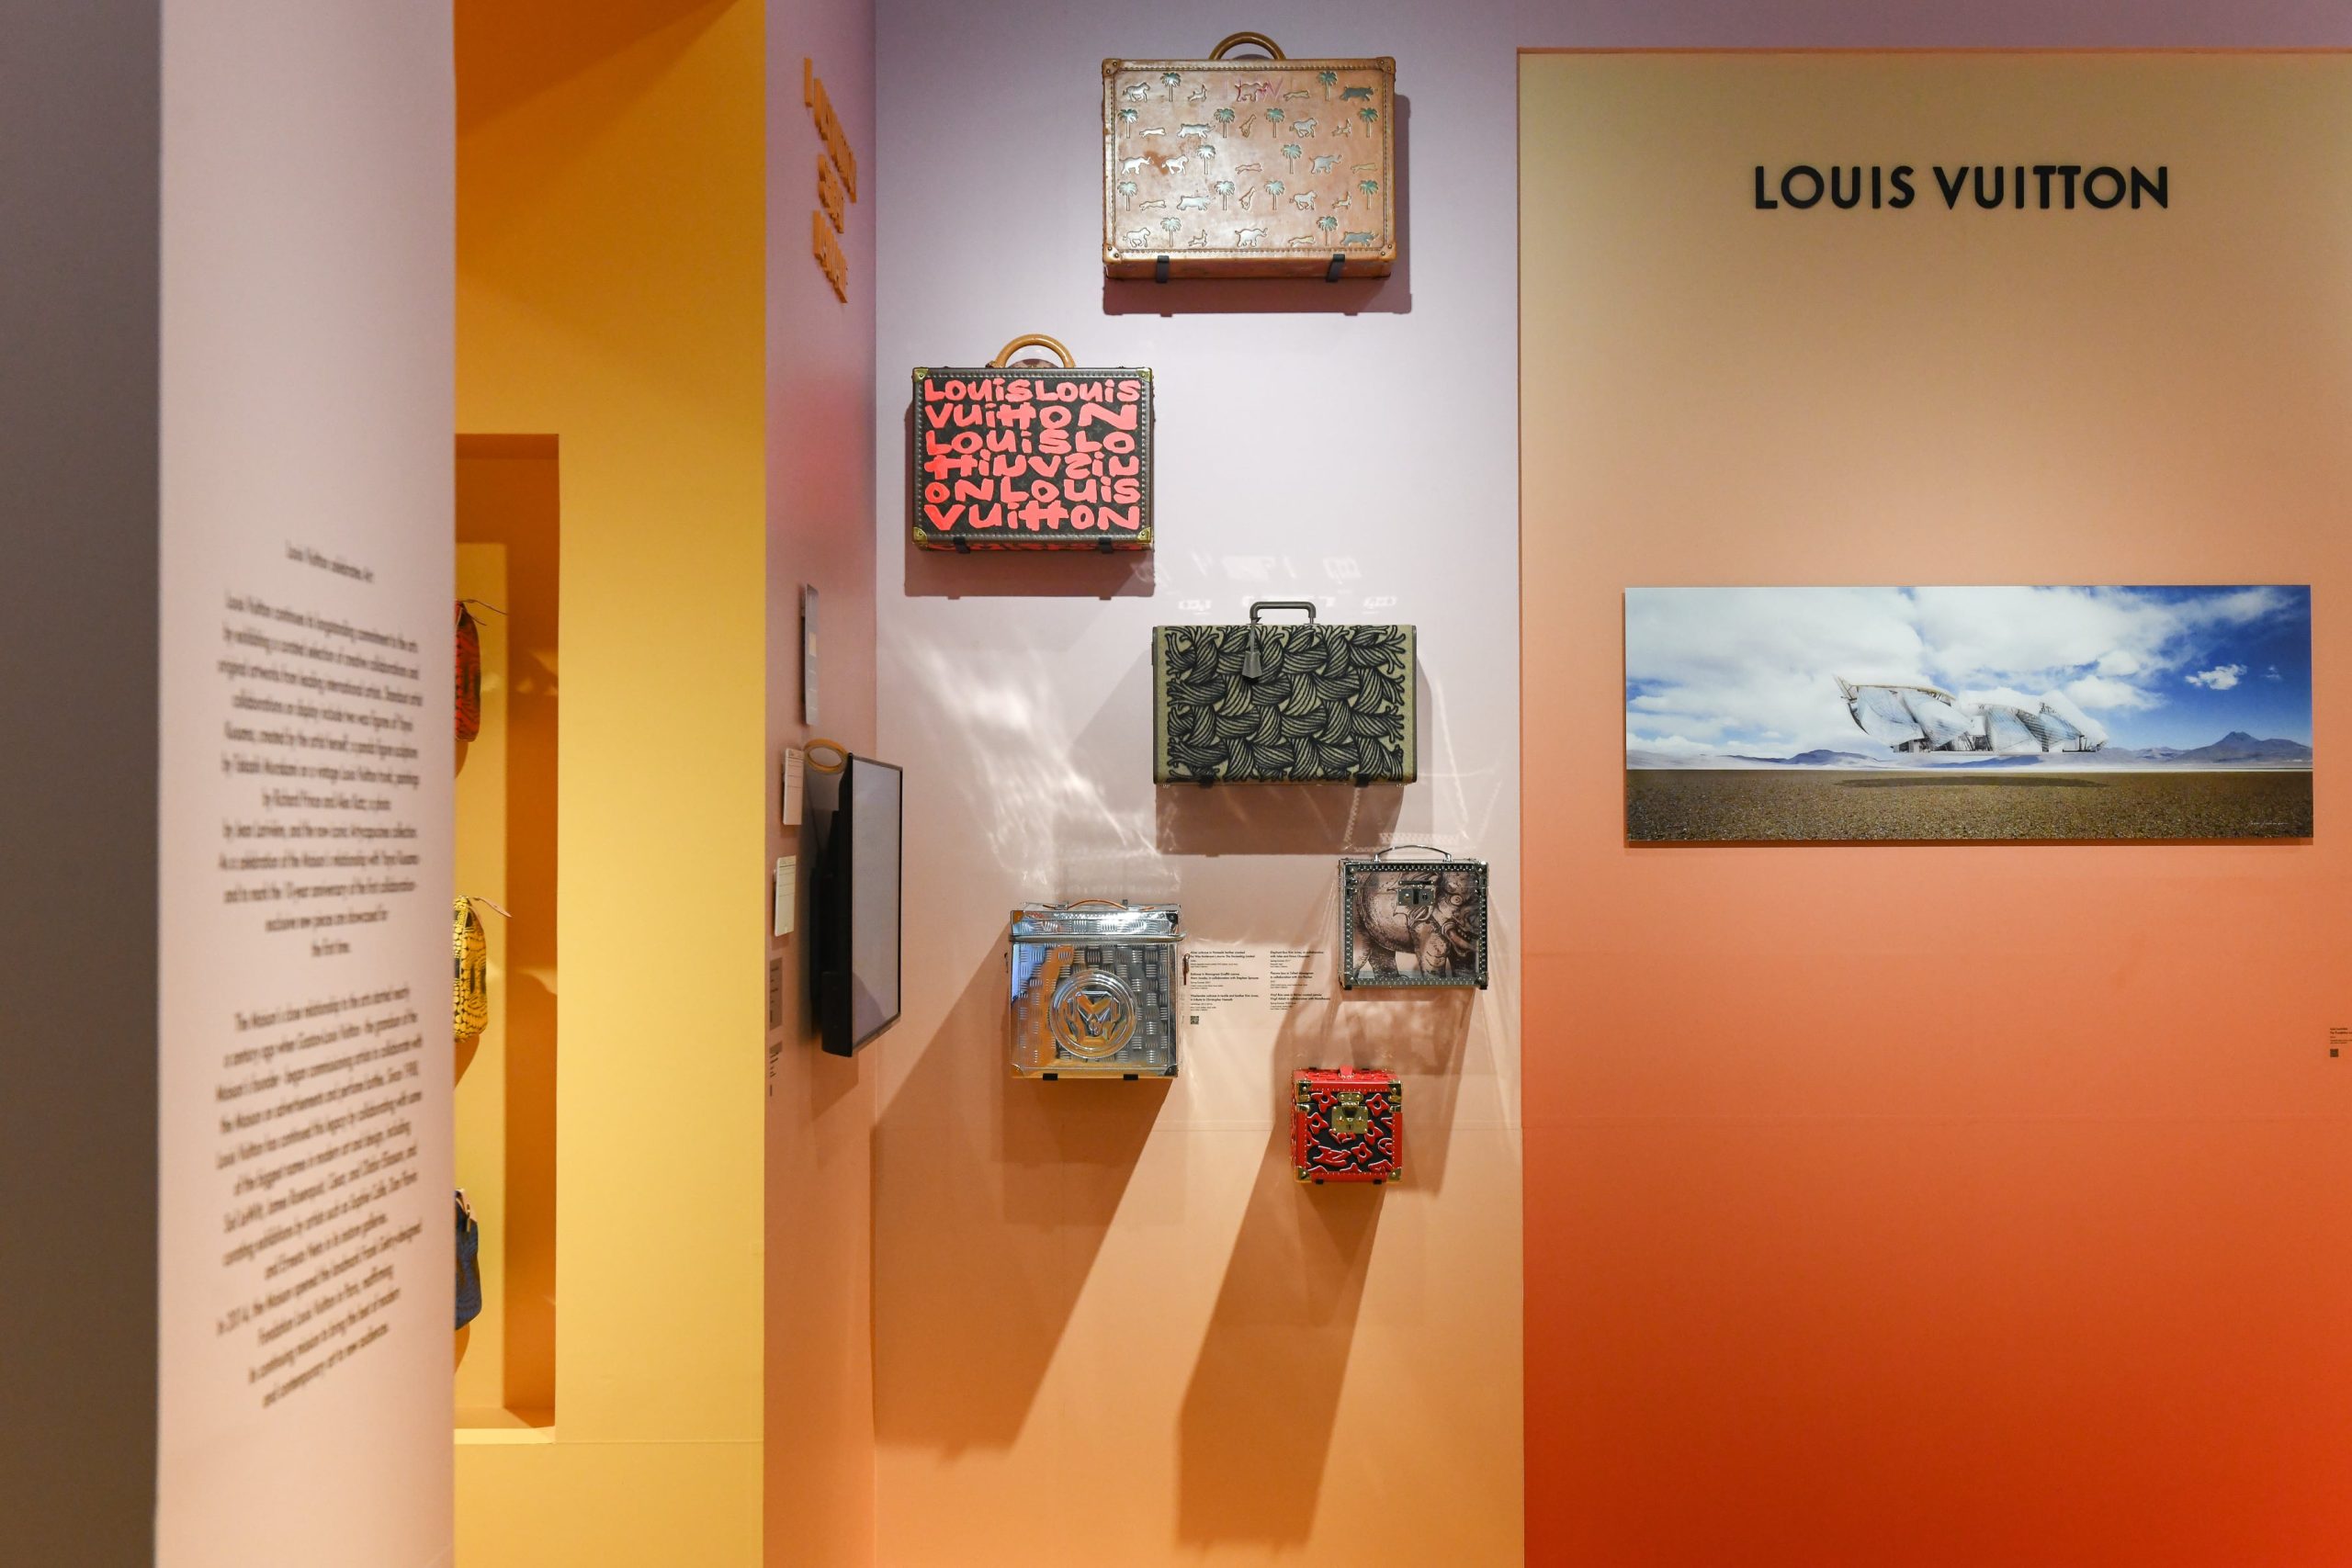 Louis Vuitton to Display Artwork at Art Basel Miami Beach - Lifestyle Media